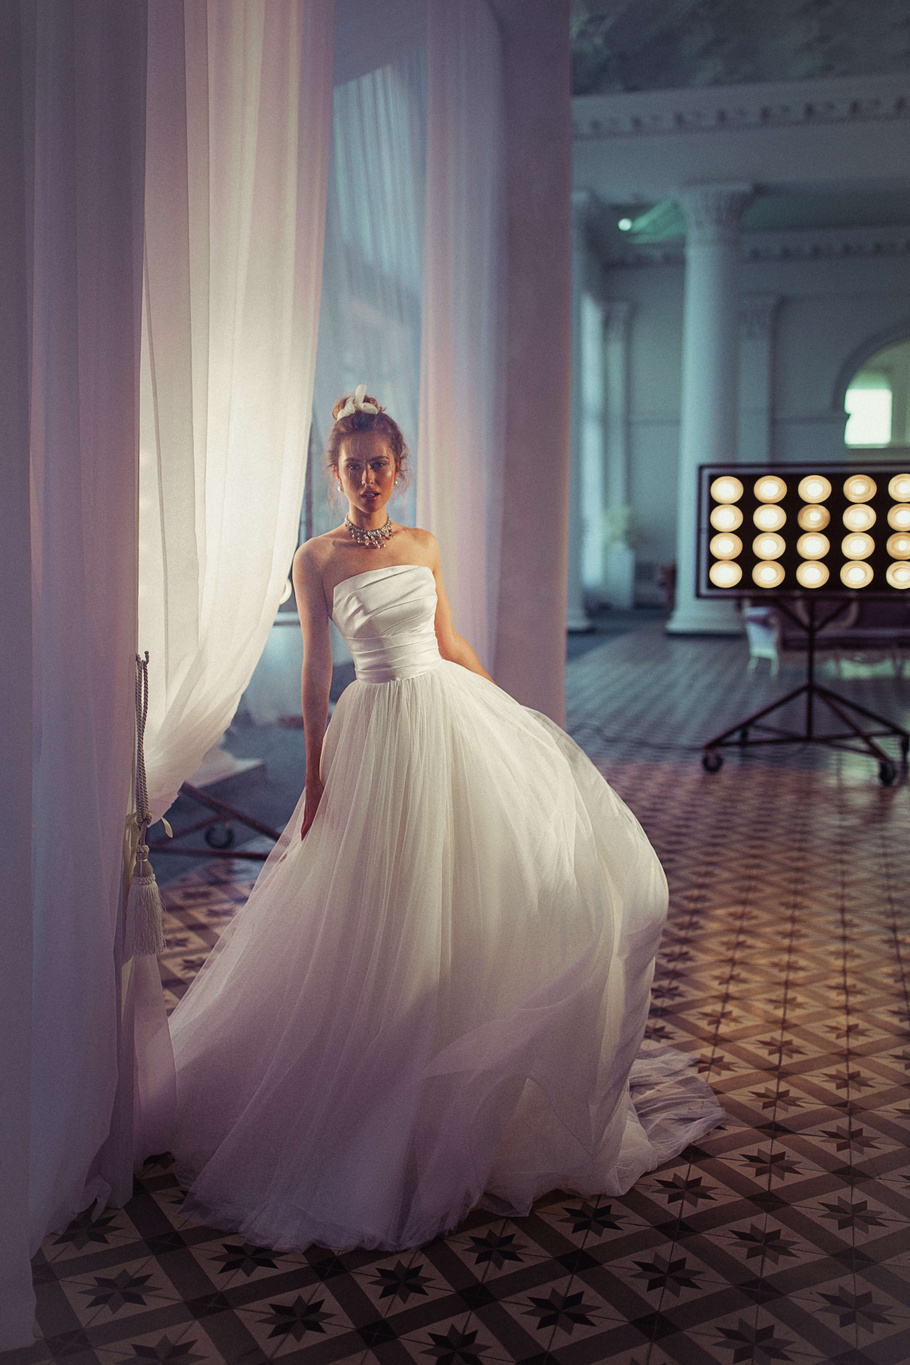 Купить свадебное платье «Тициана» Бламмо Биамо из коллекции Свит Лайф 2021 года в Санкт-Петербурге